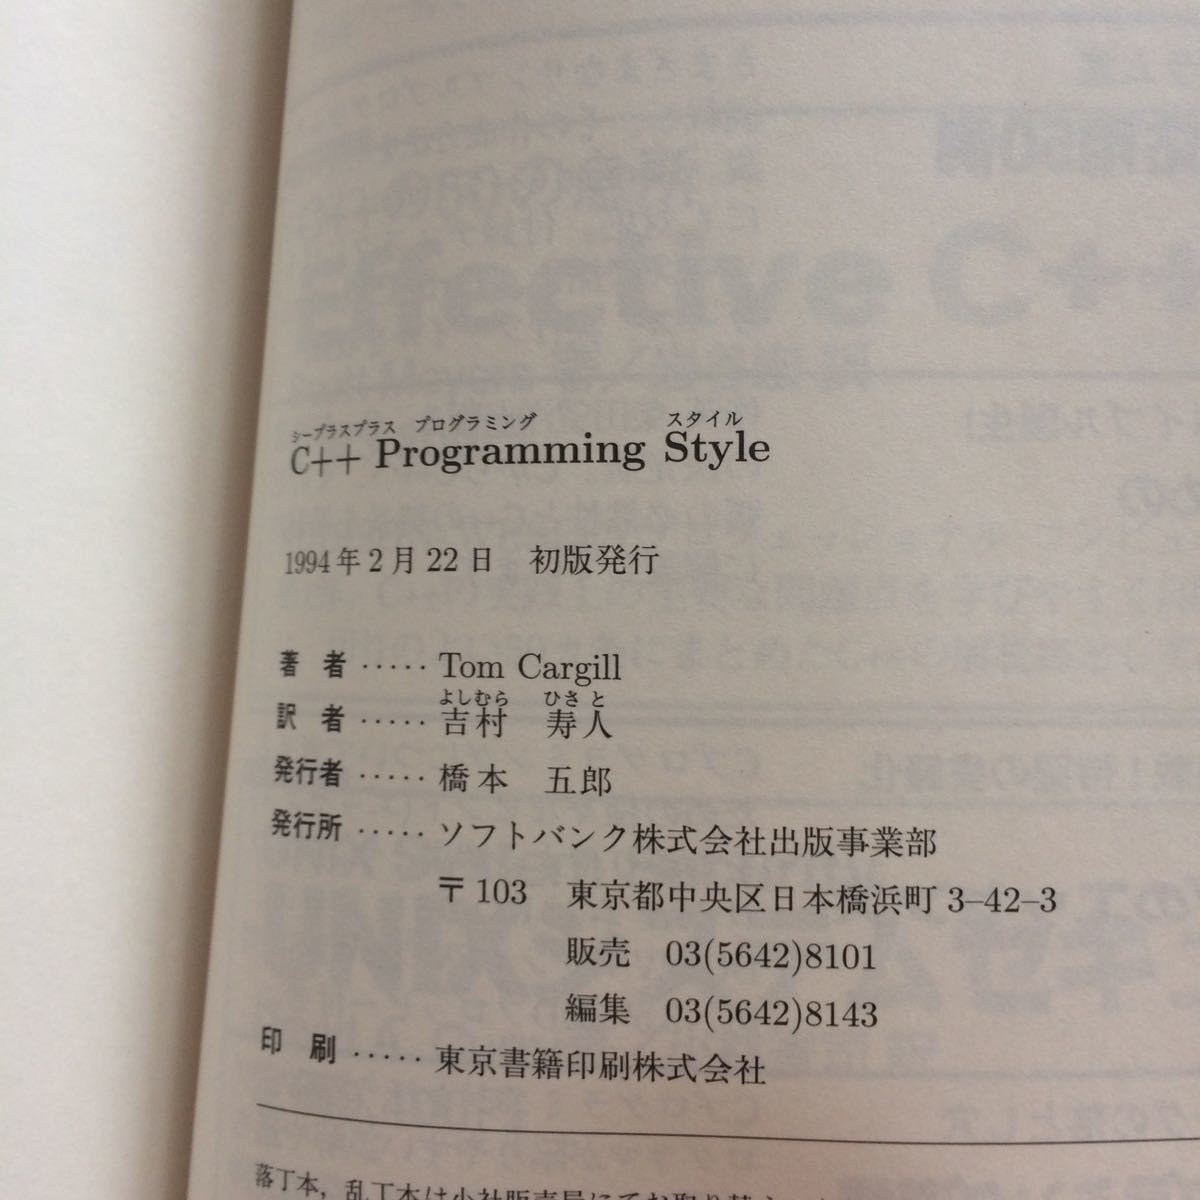 C++ Programming Style C++ программирование документ закон Tom Cargill работа Yoshimura . человек перевод первая версия 